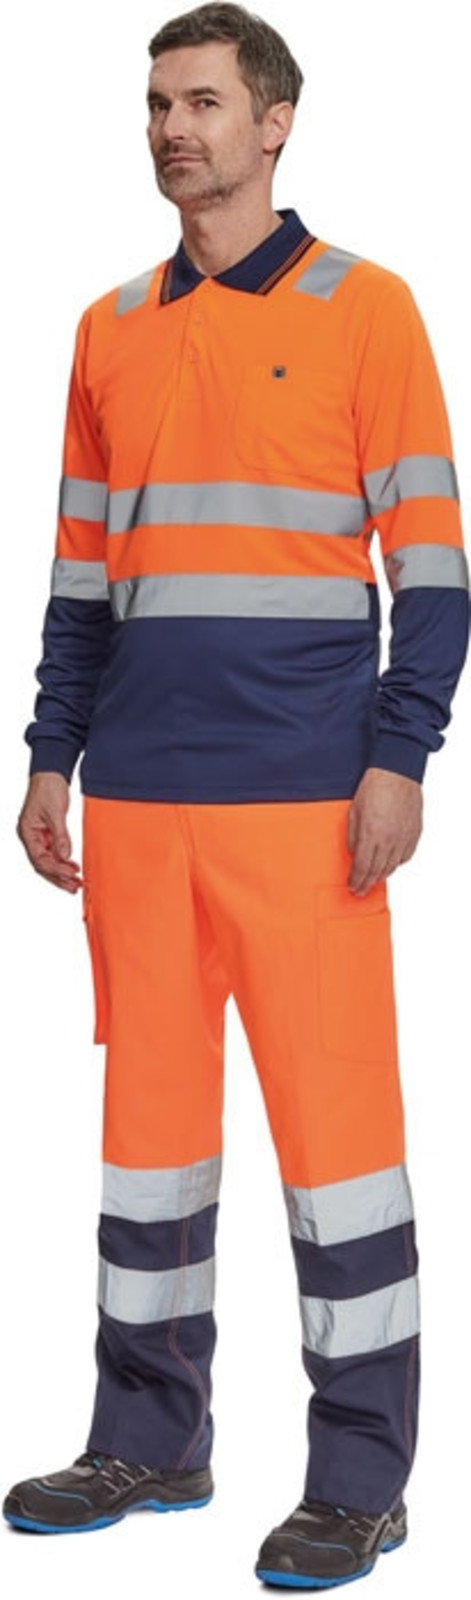 Reflexné nohavice Cerva Burgos HV - veľkosť: 64, farba: oranžová/navy